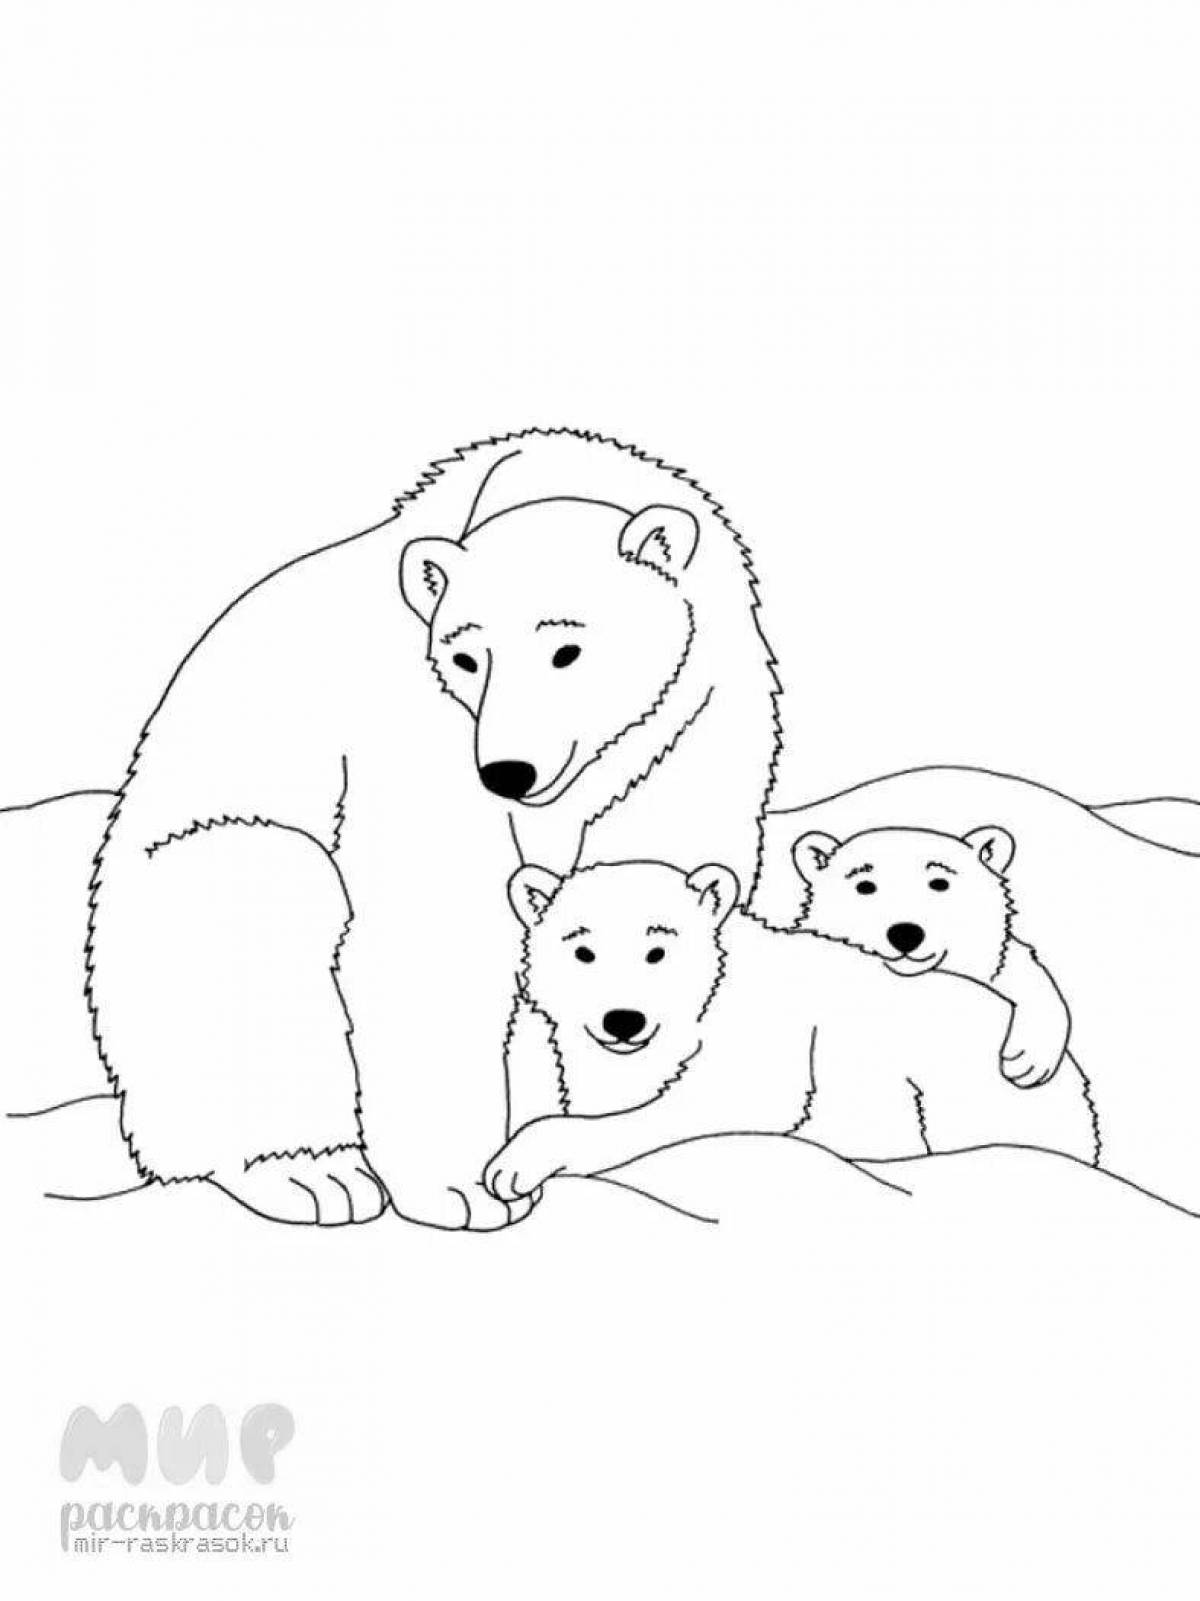 Анимированная страница раскраски белого медведя